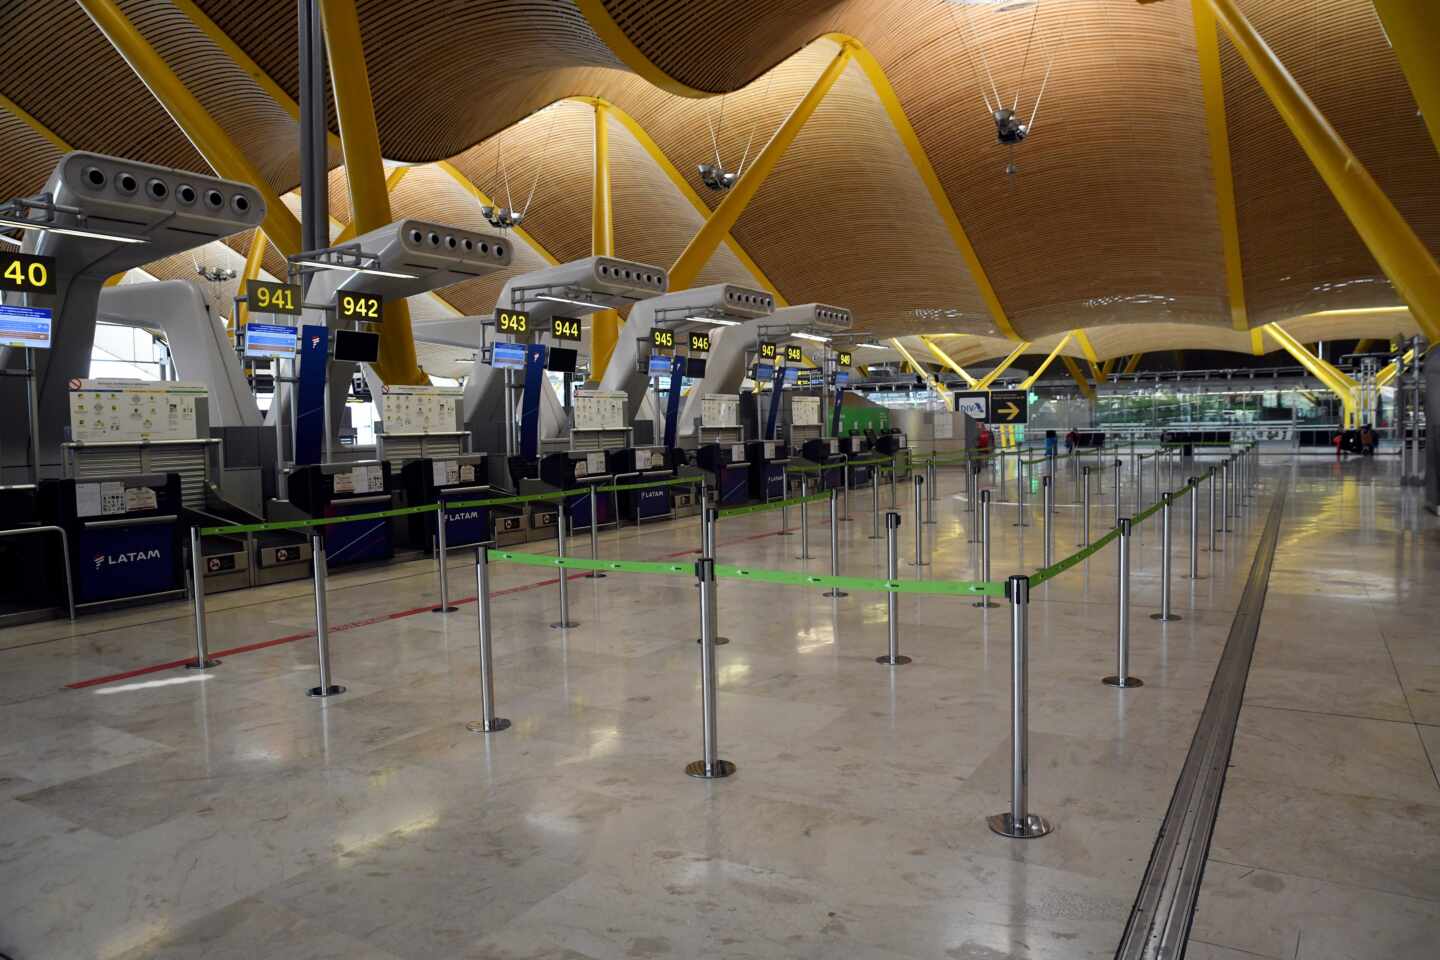 El aeropuerto de Madrid-Barajas sin pasajeros.